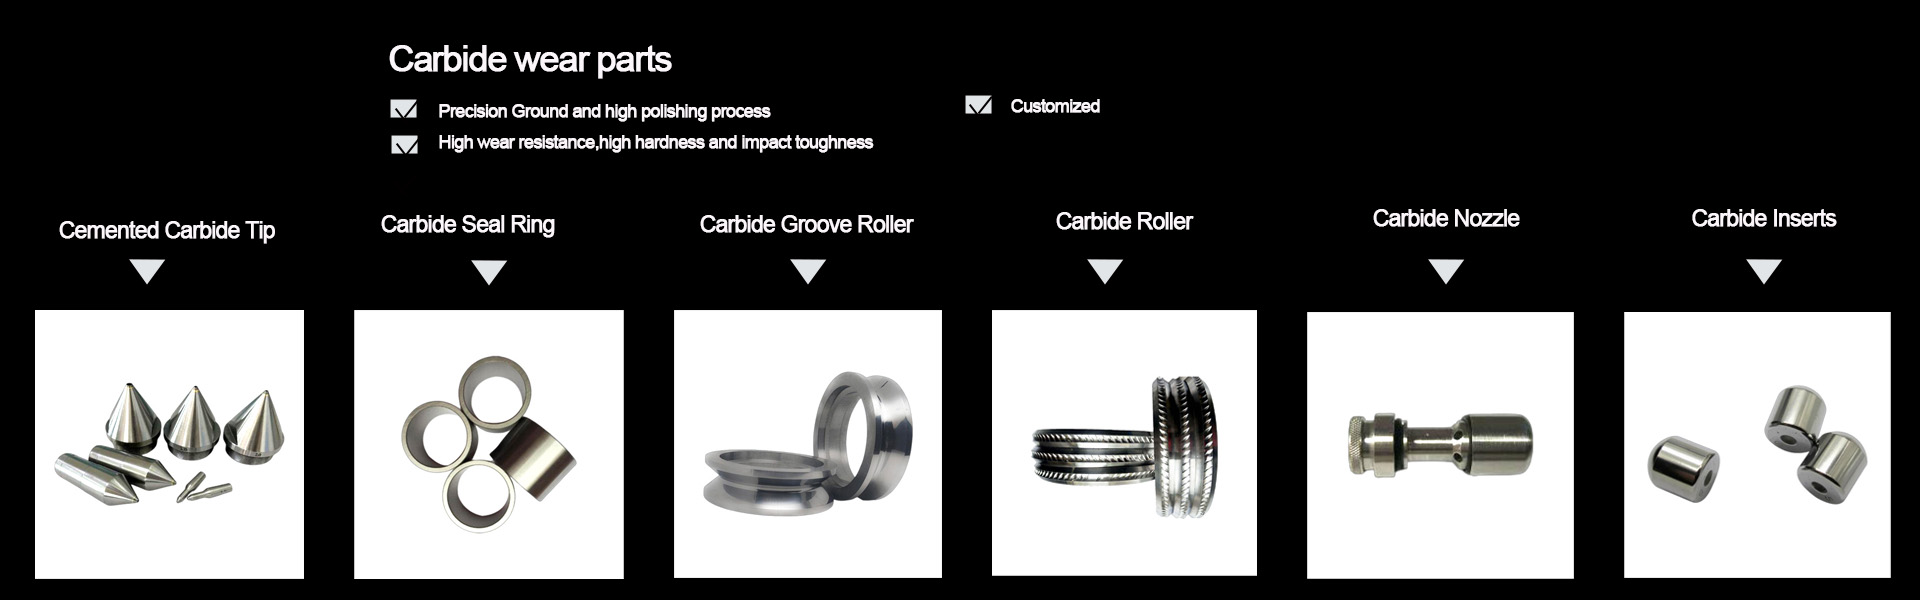 Carbide wear parts